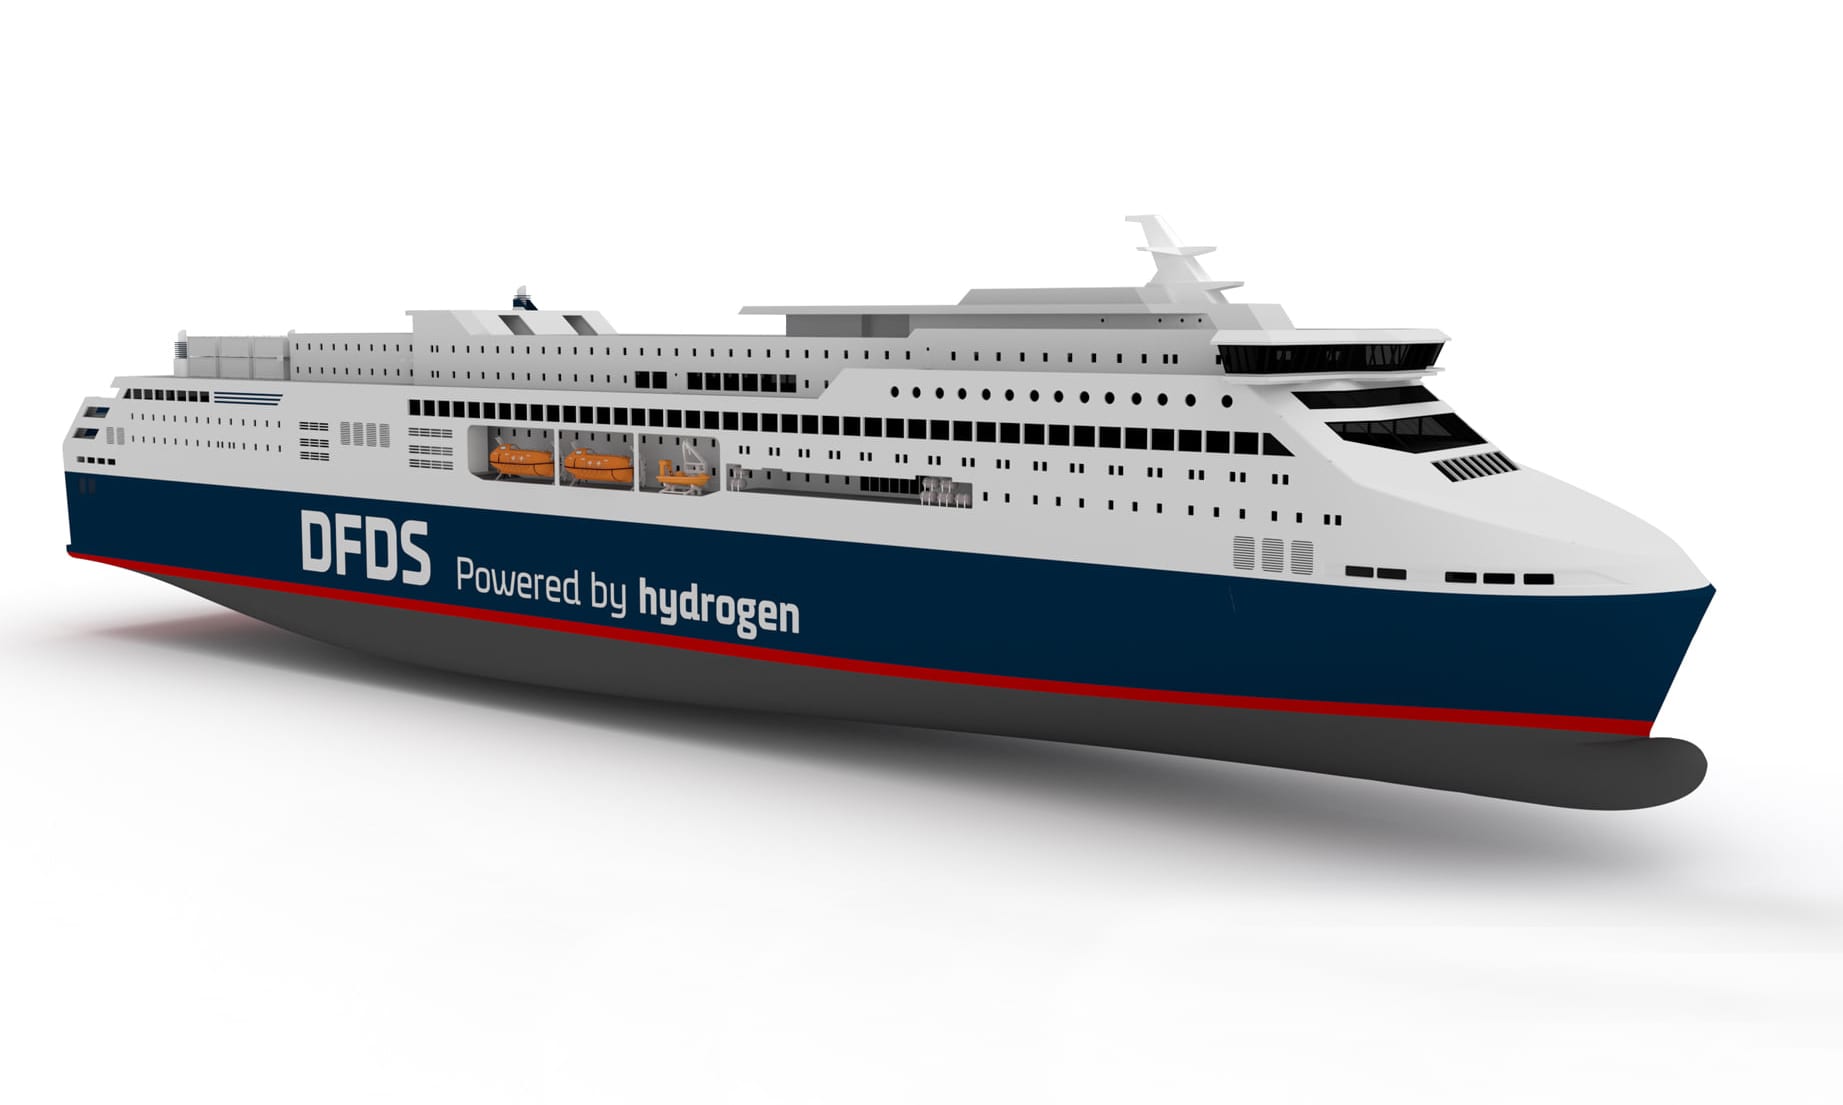 Une compagnie maritime danoise développe actuellement un navire 100% hydrogène